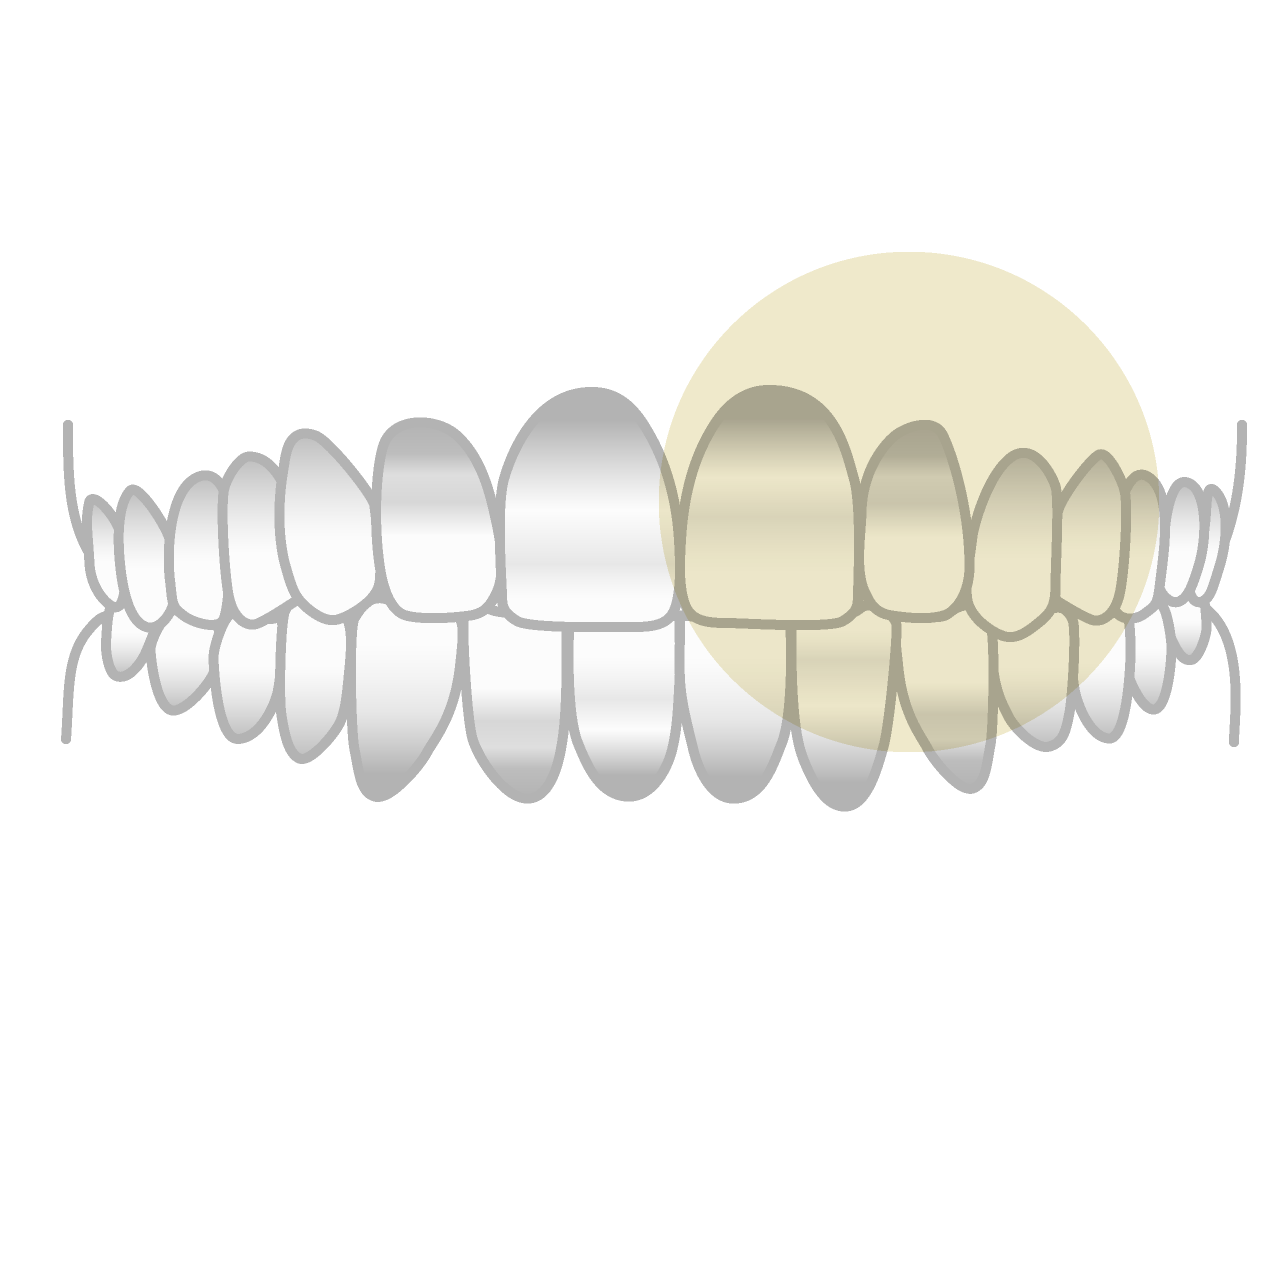 テトラサイクリン歯